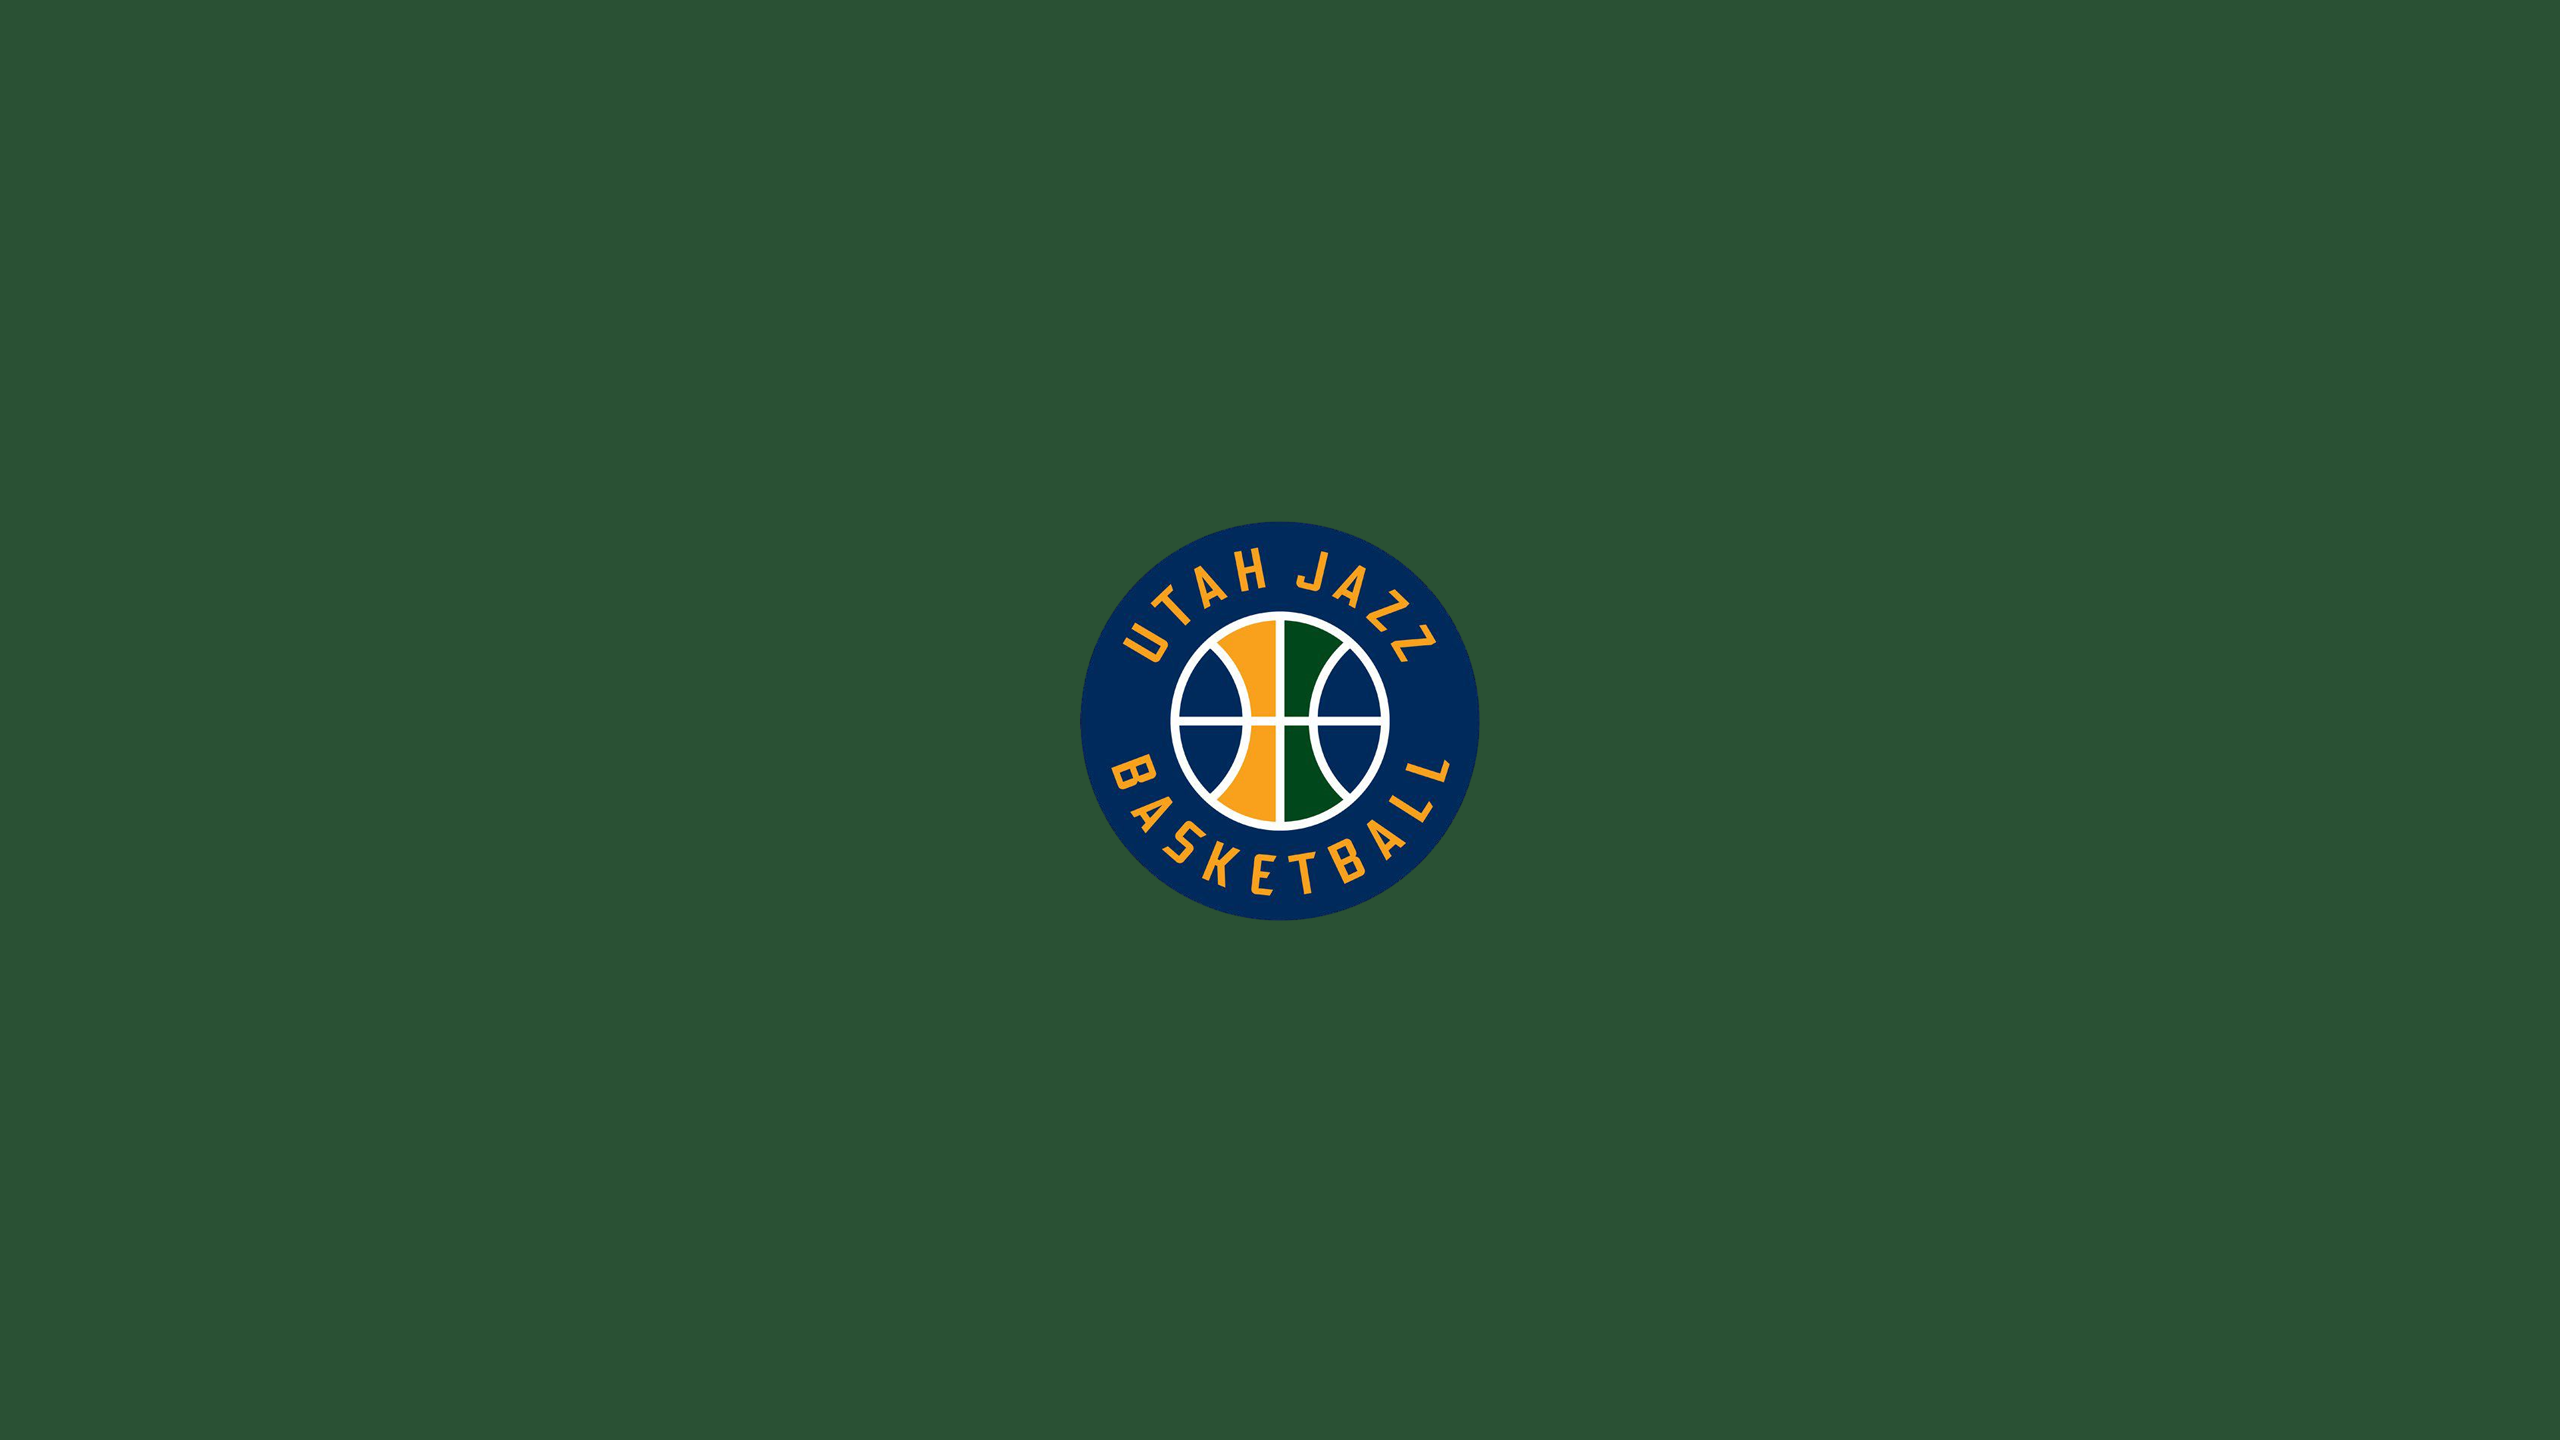 Basketball Emblem Logo Nba 2560x1440